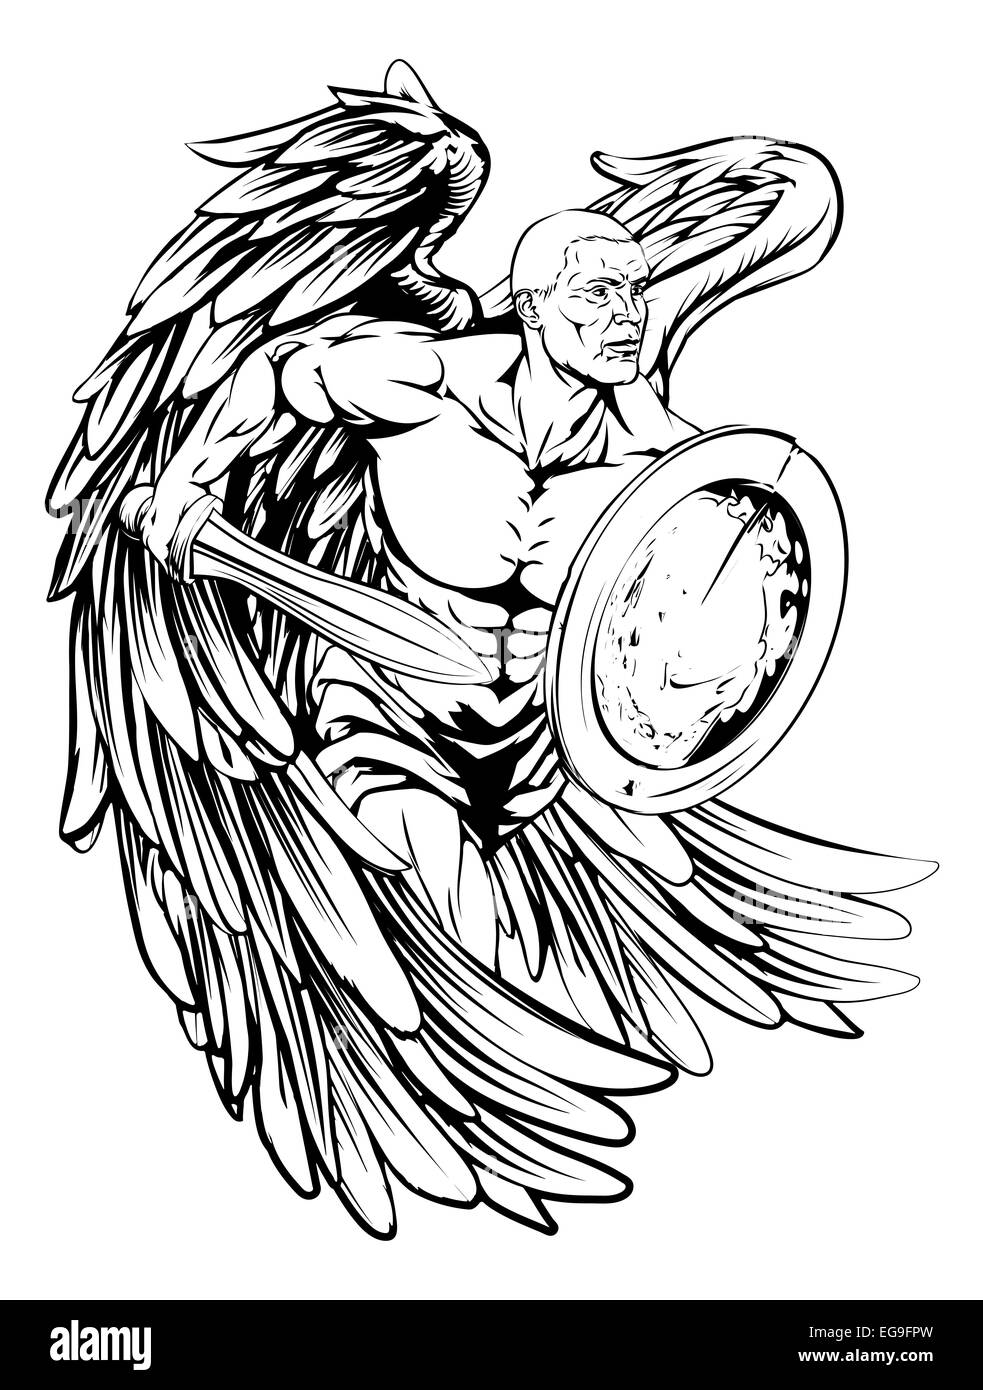 Pin by Daniel Souza on Tattoo | Warrior tattoos, Knight tattoo, Guardian  angel tattoo designs